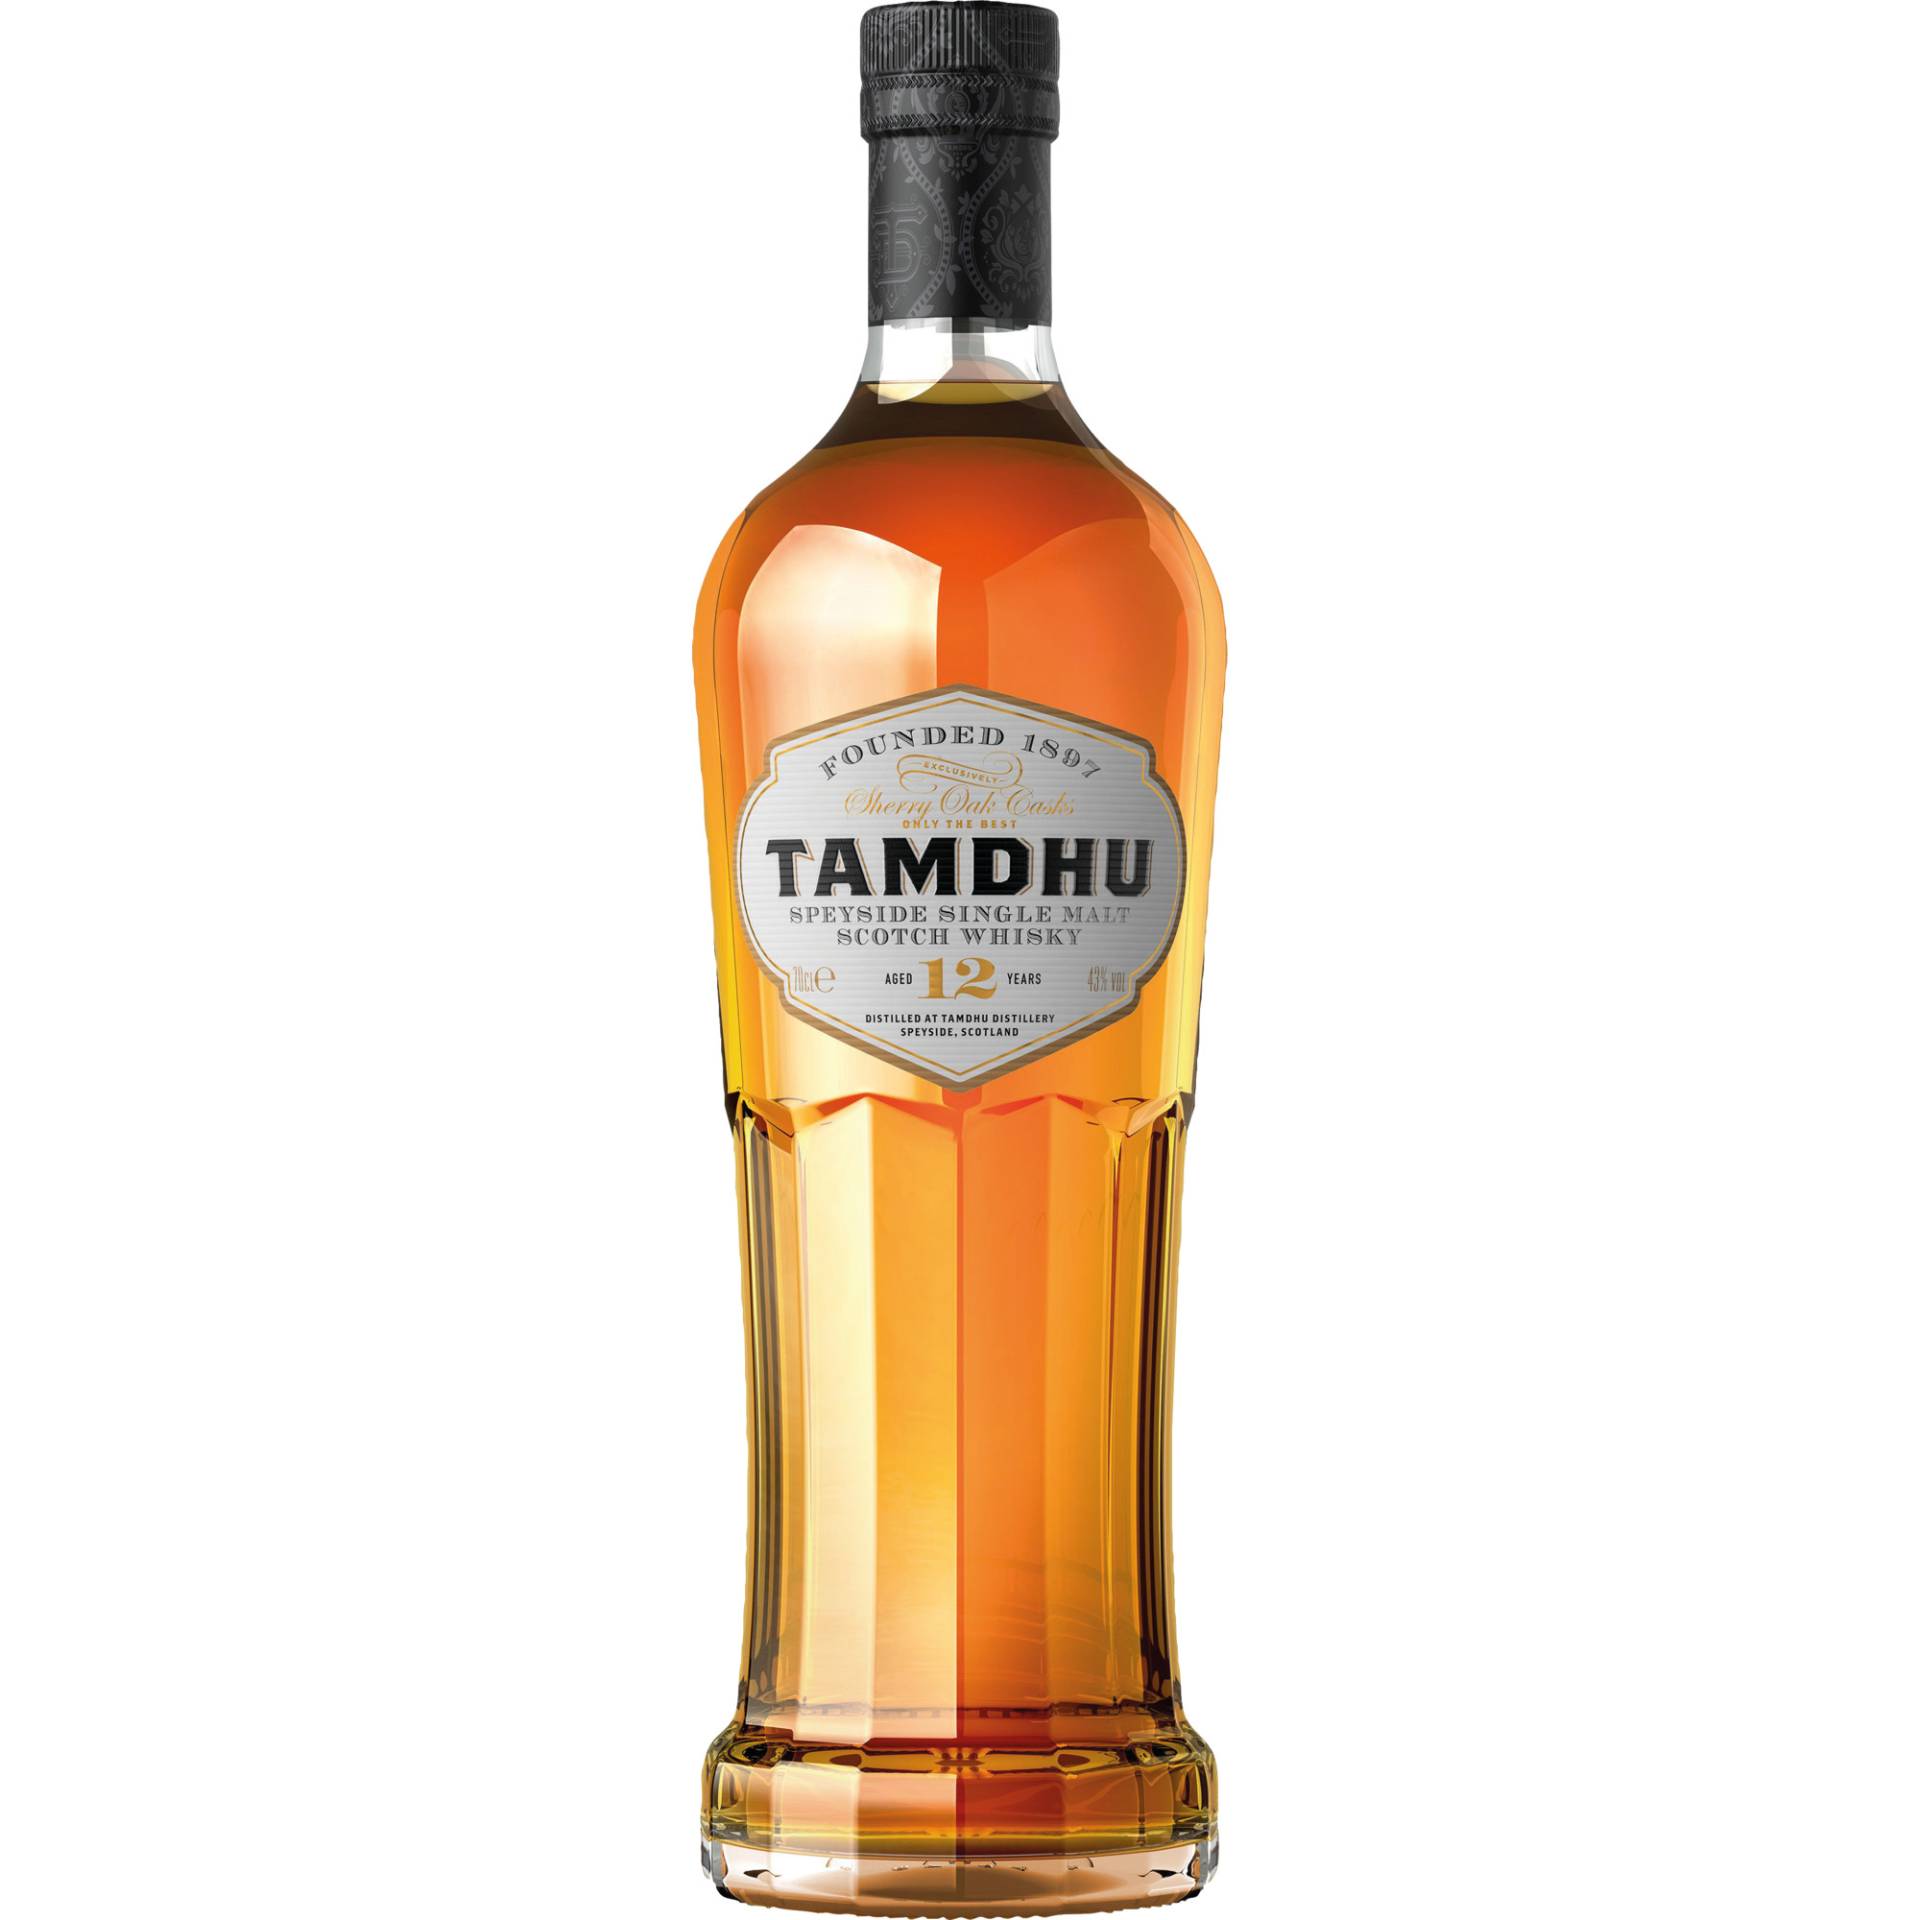 Tamdhu 12 YO Speyside Single Malt Scotch Whisky, 0,7l, 43 % Vol., Schottland, Spirituosen von Ian Macleod Distilleries Ltd., Great Britain